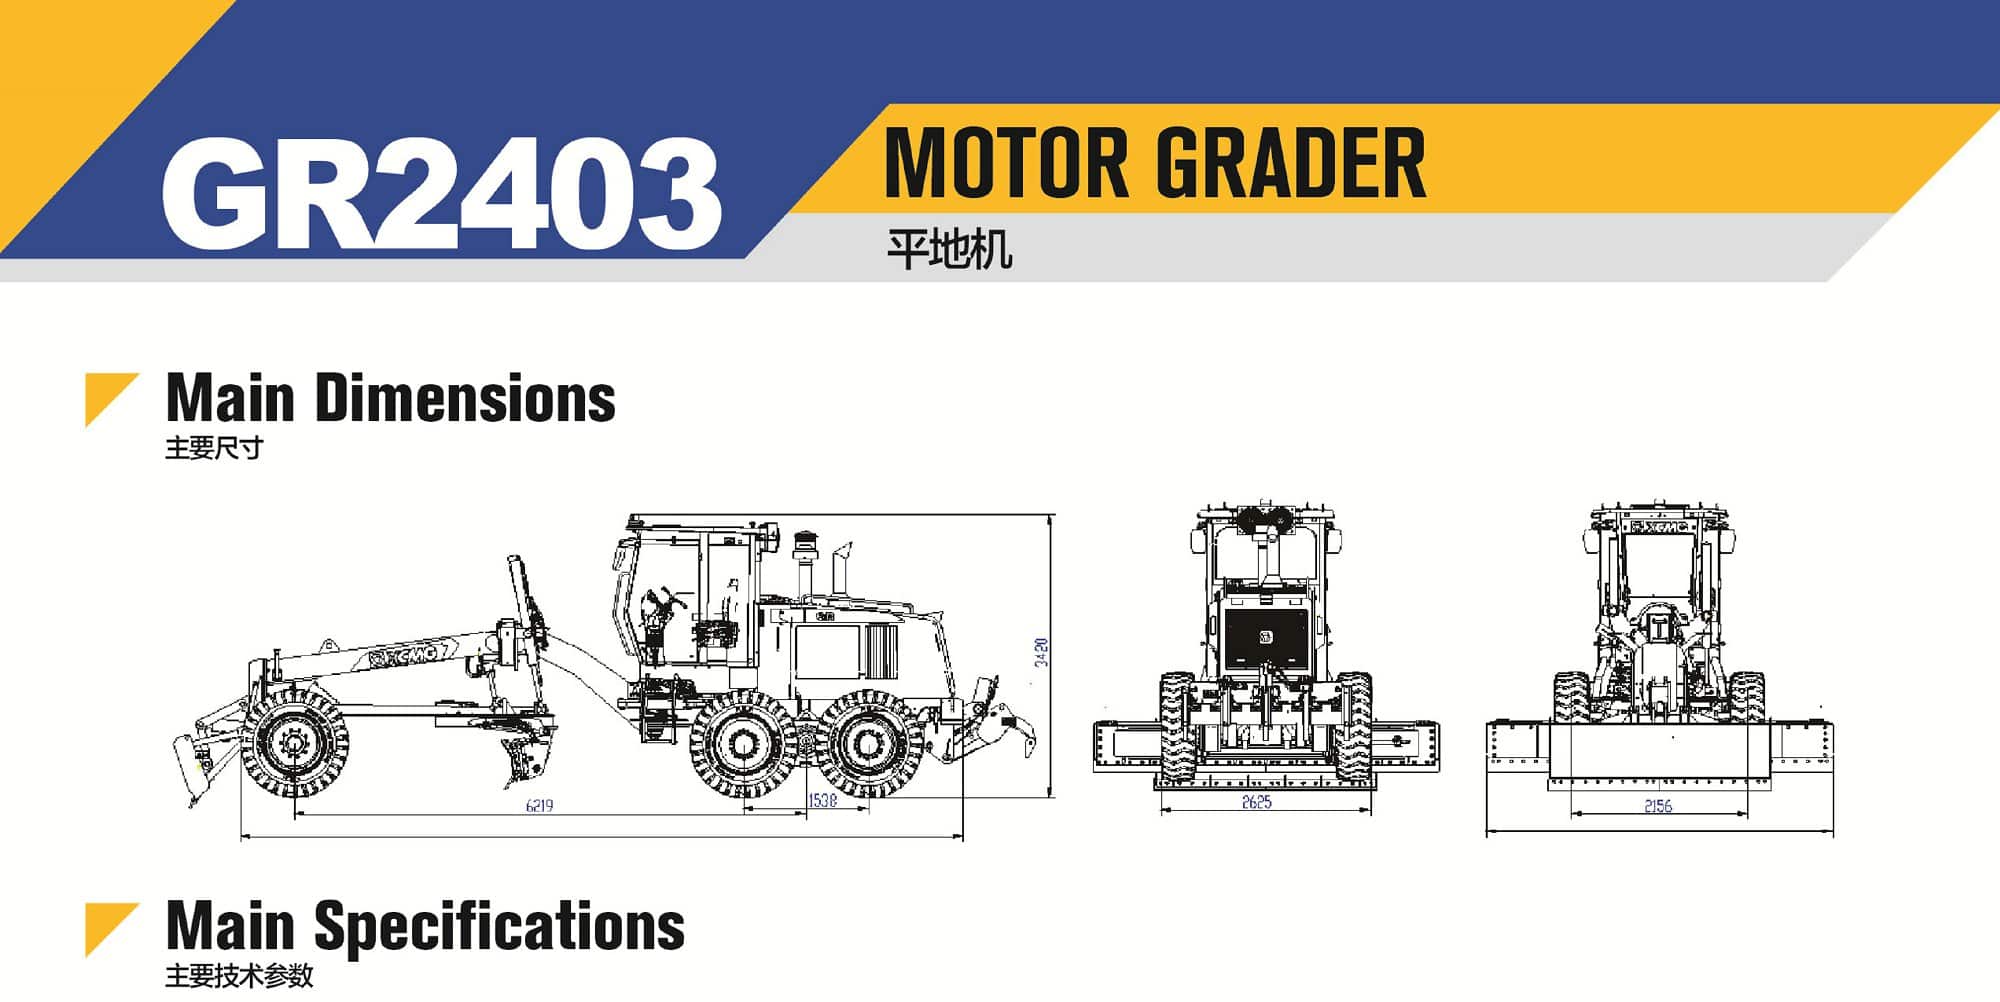 XCMG Official GR2403 Motor Grader for sale